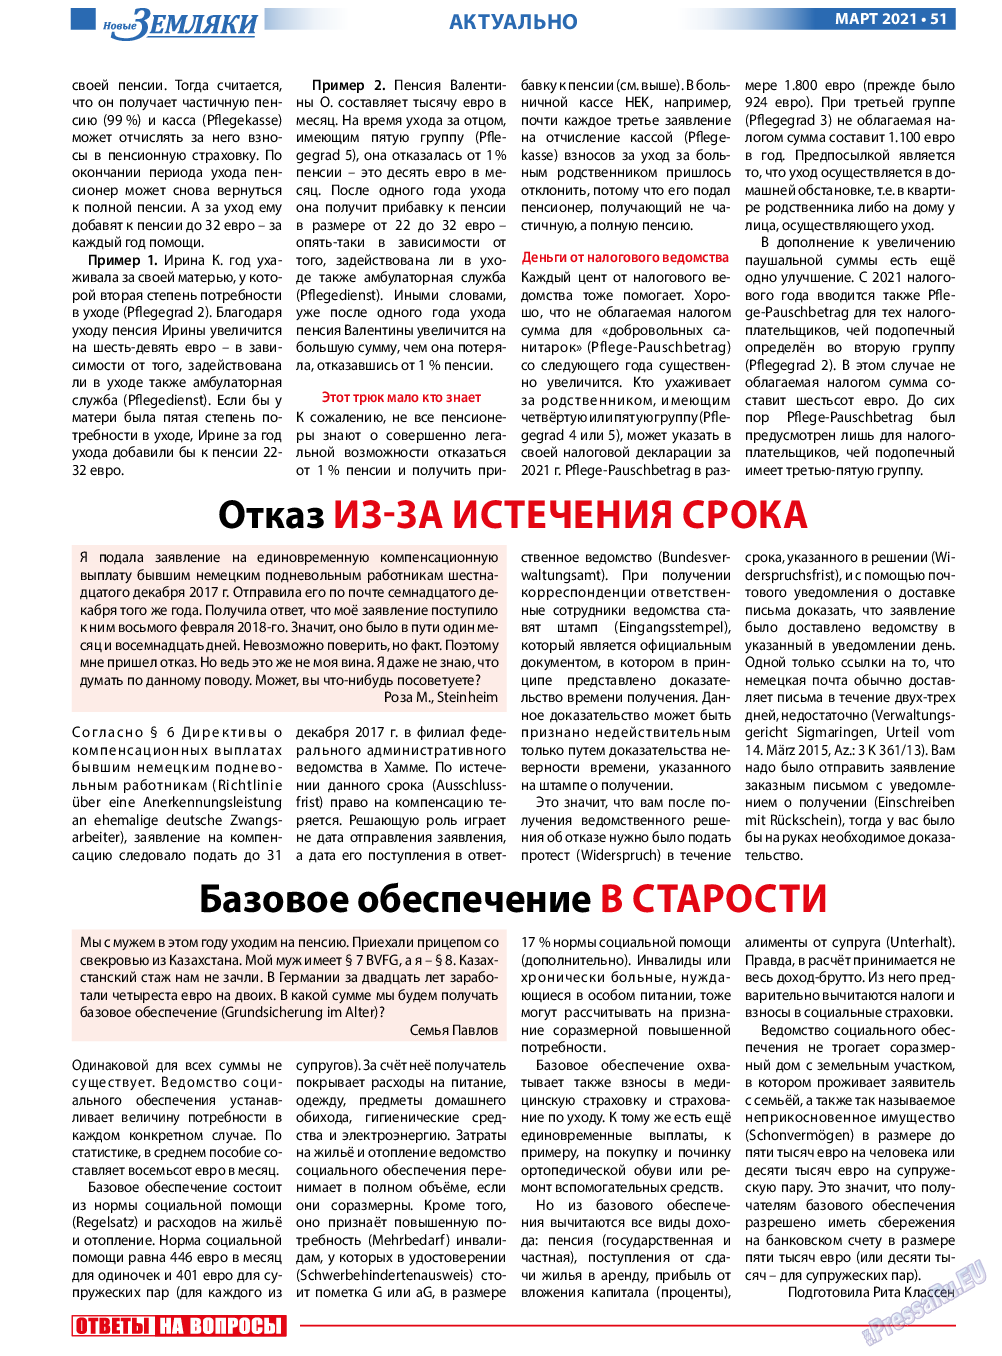 Новые Земляки, газета. 2021 №3 стр.51